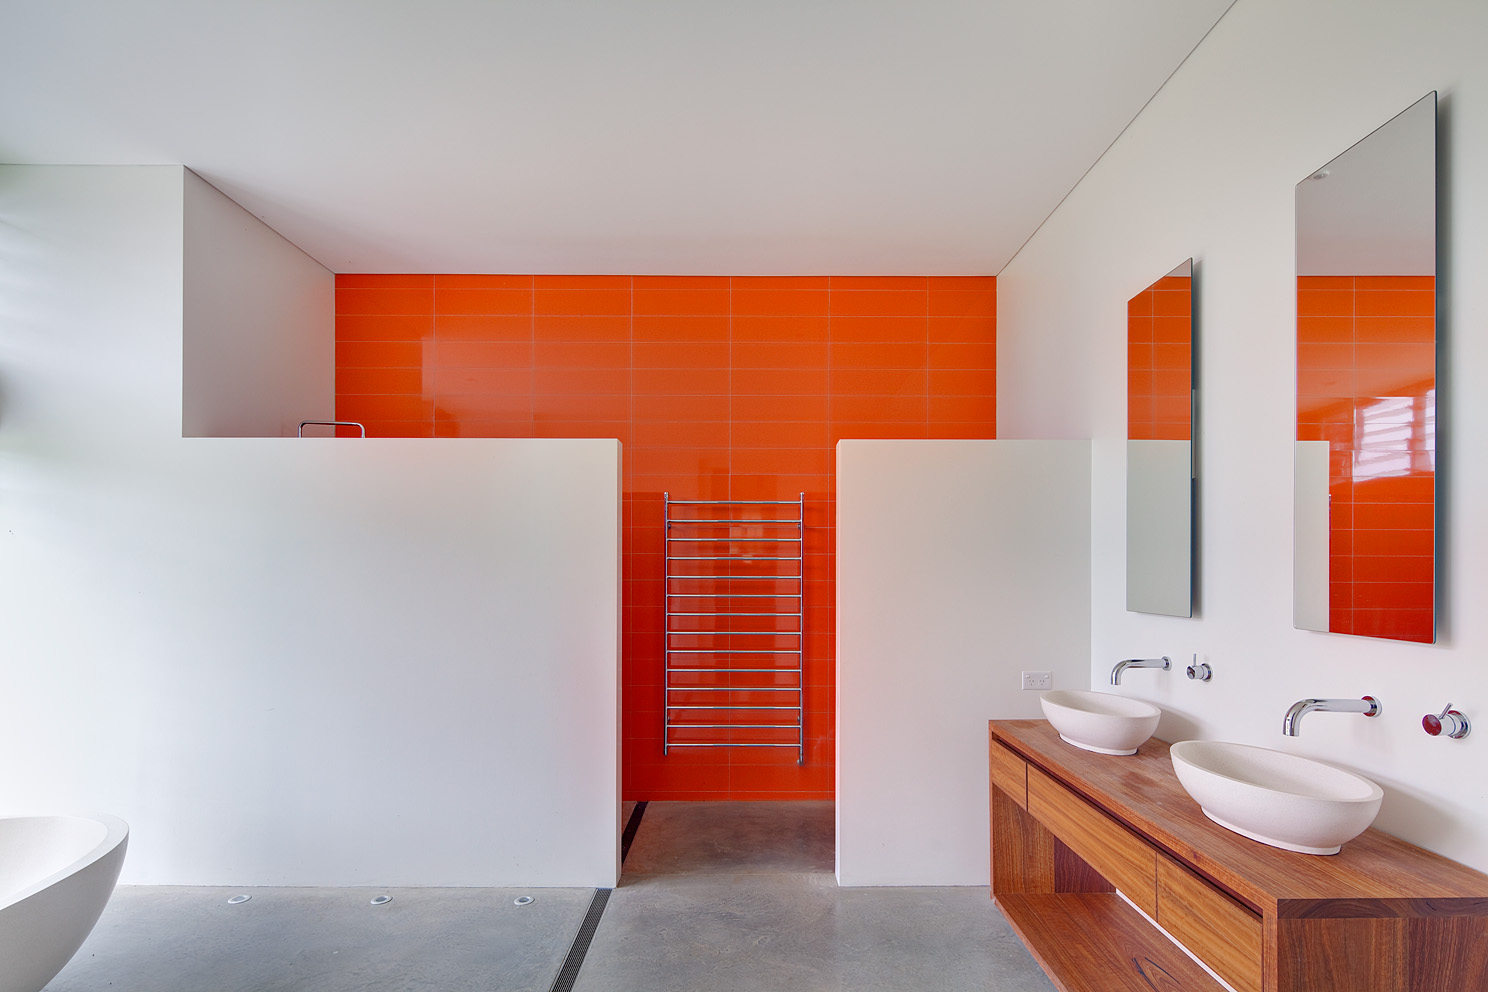 Dynamique, presque orange néon dans la conception de la salle de bain